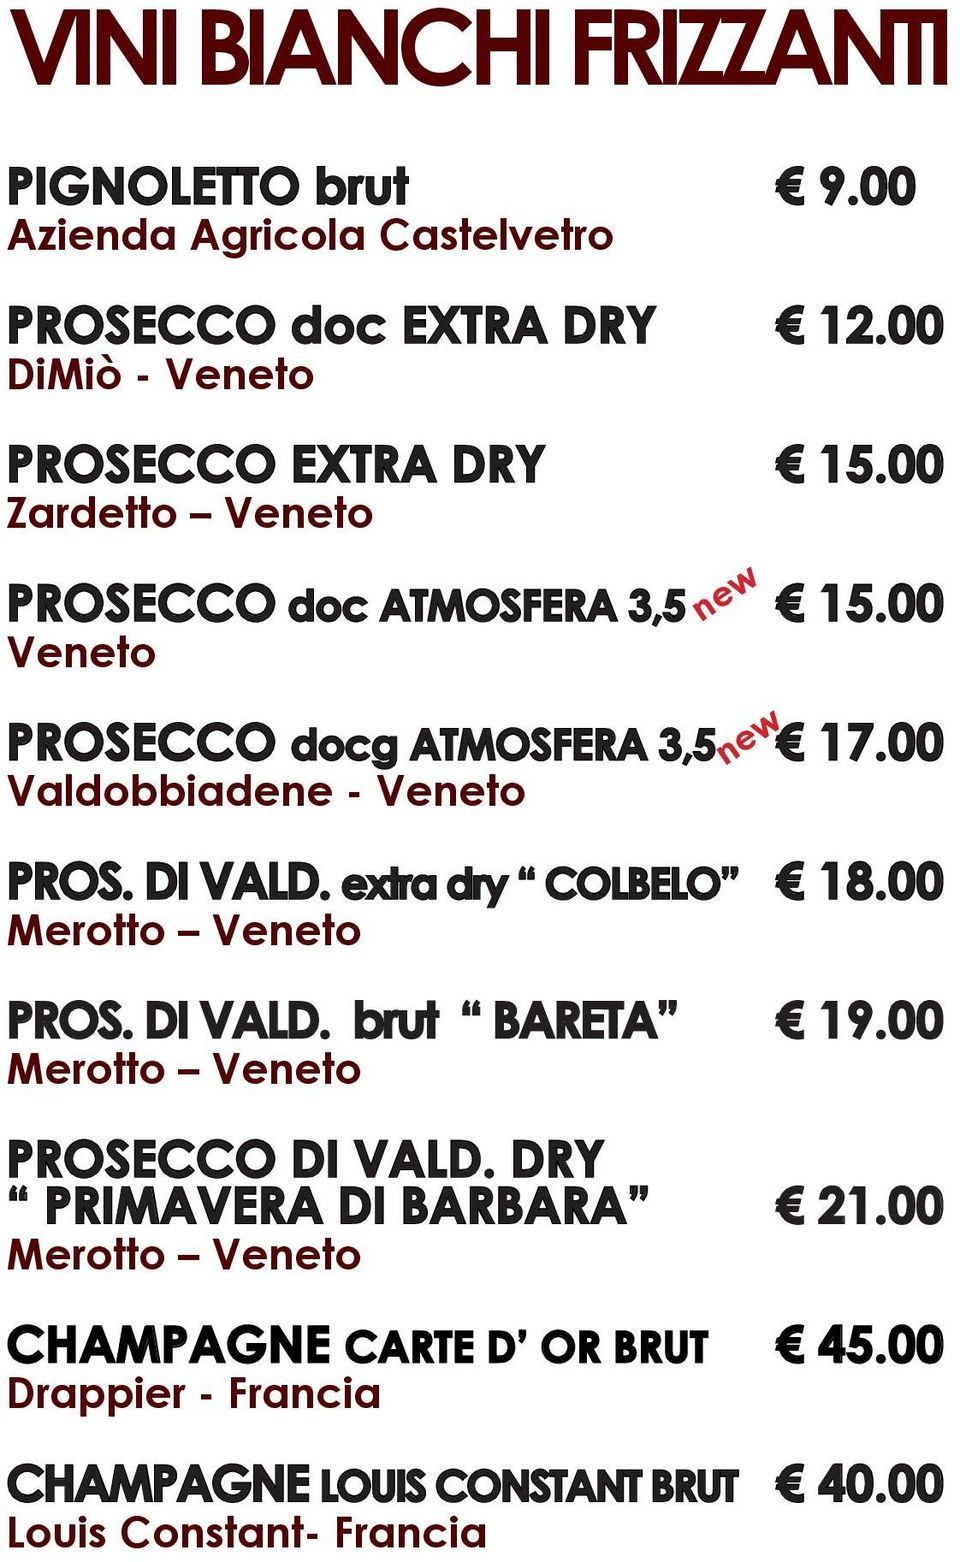 00 Valdobbiadene - Veneto PROS. DI VALD. extra dry COLBELO 18.00 Merotto Veneto PROS. DI VALD. brut BARETA 19.